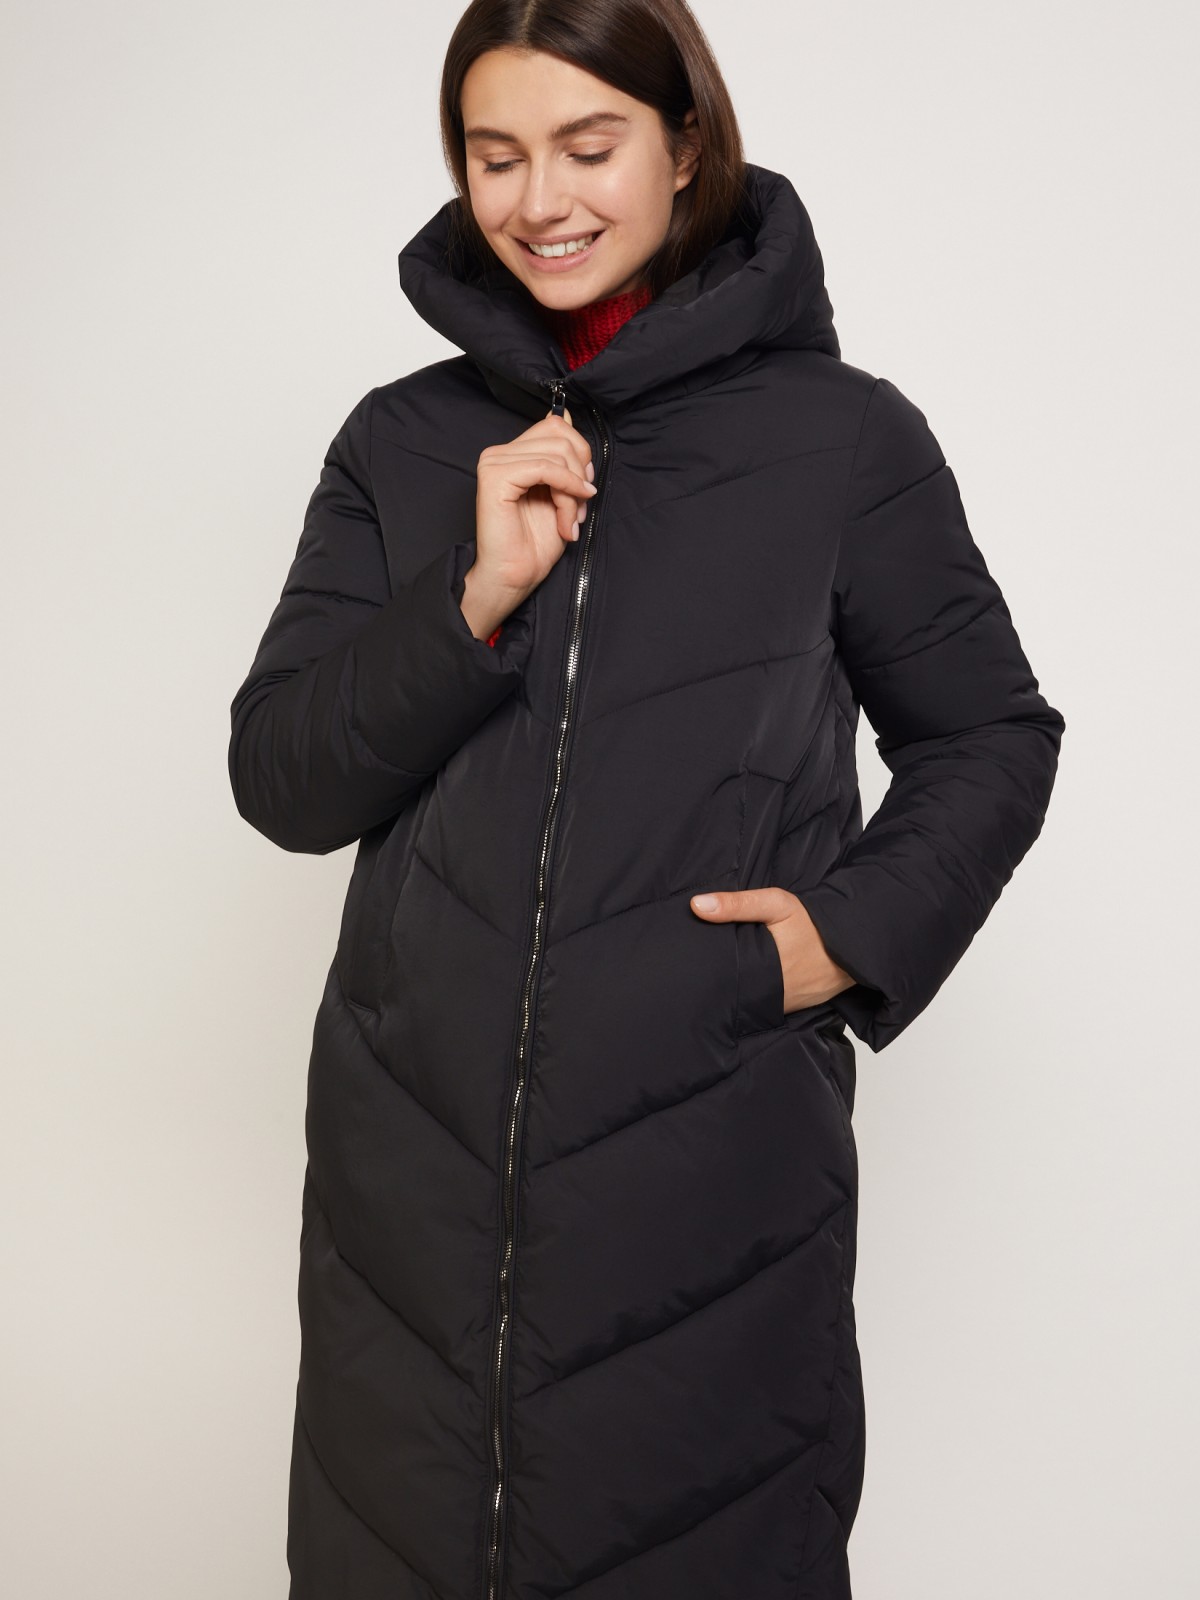 Тёплое стёганое пальто с капюшоном zolla 021345202054, цвет черный, размер XS - фото 3